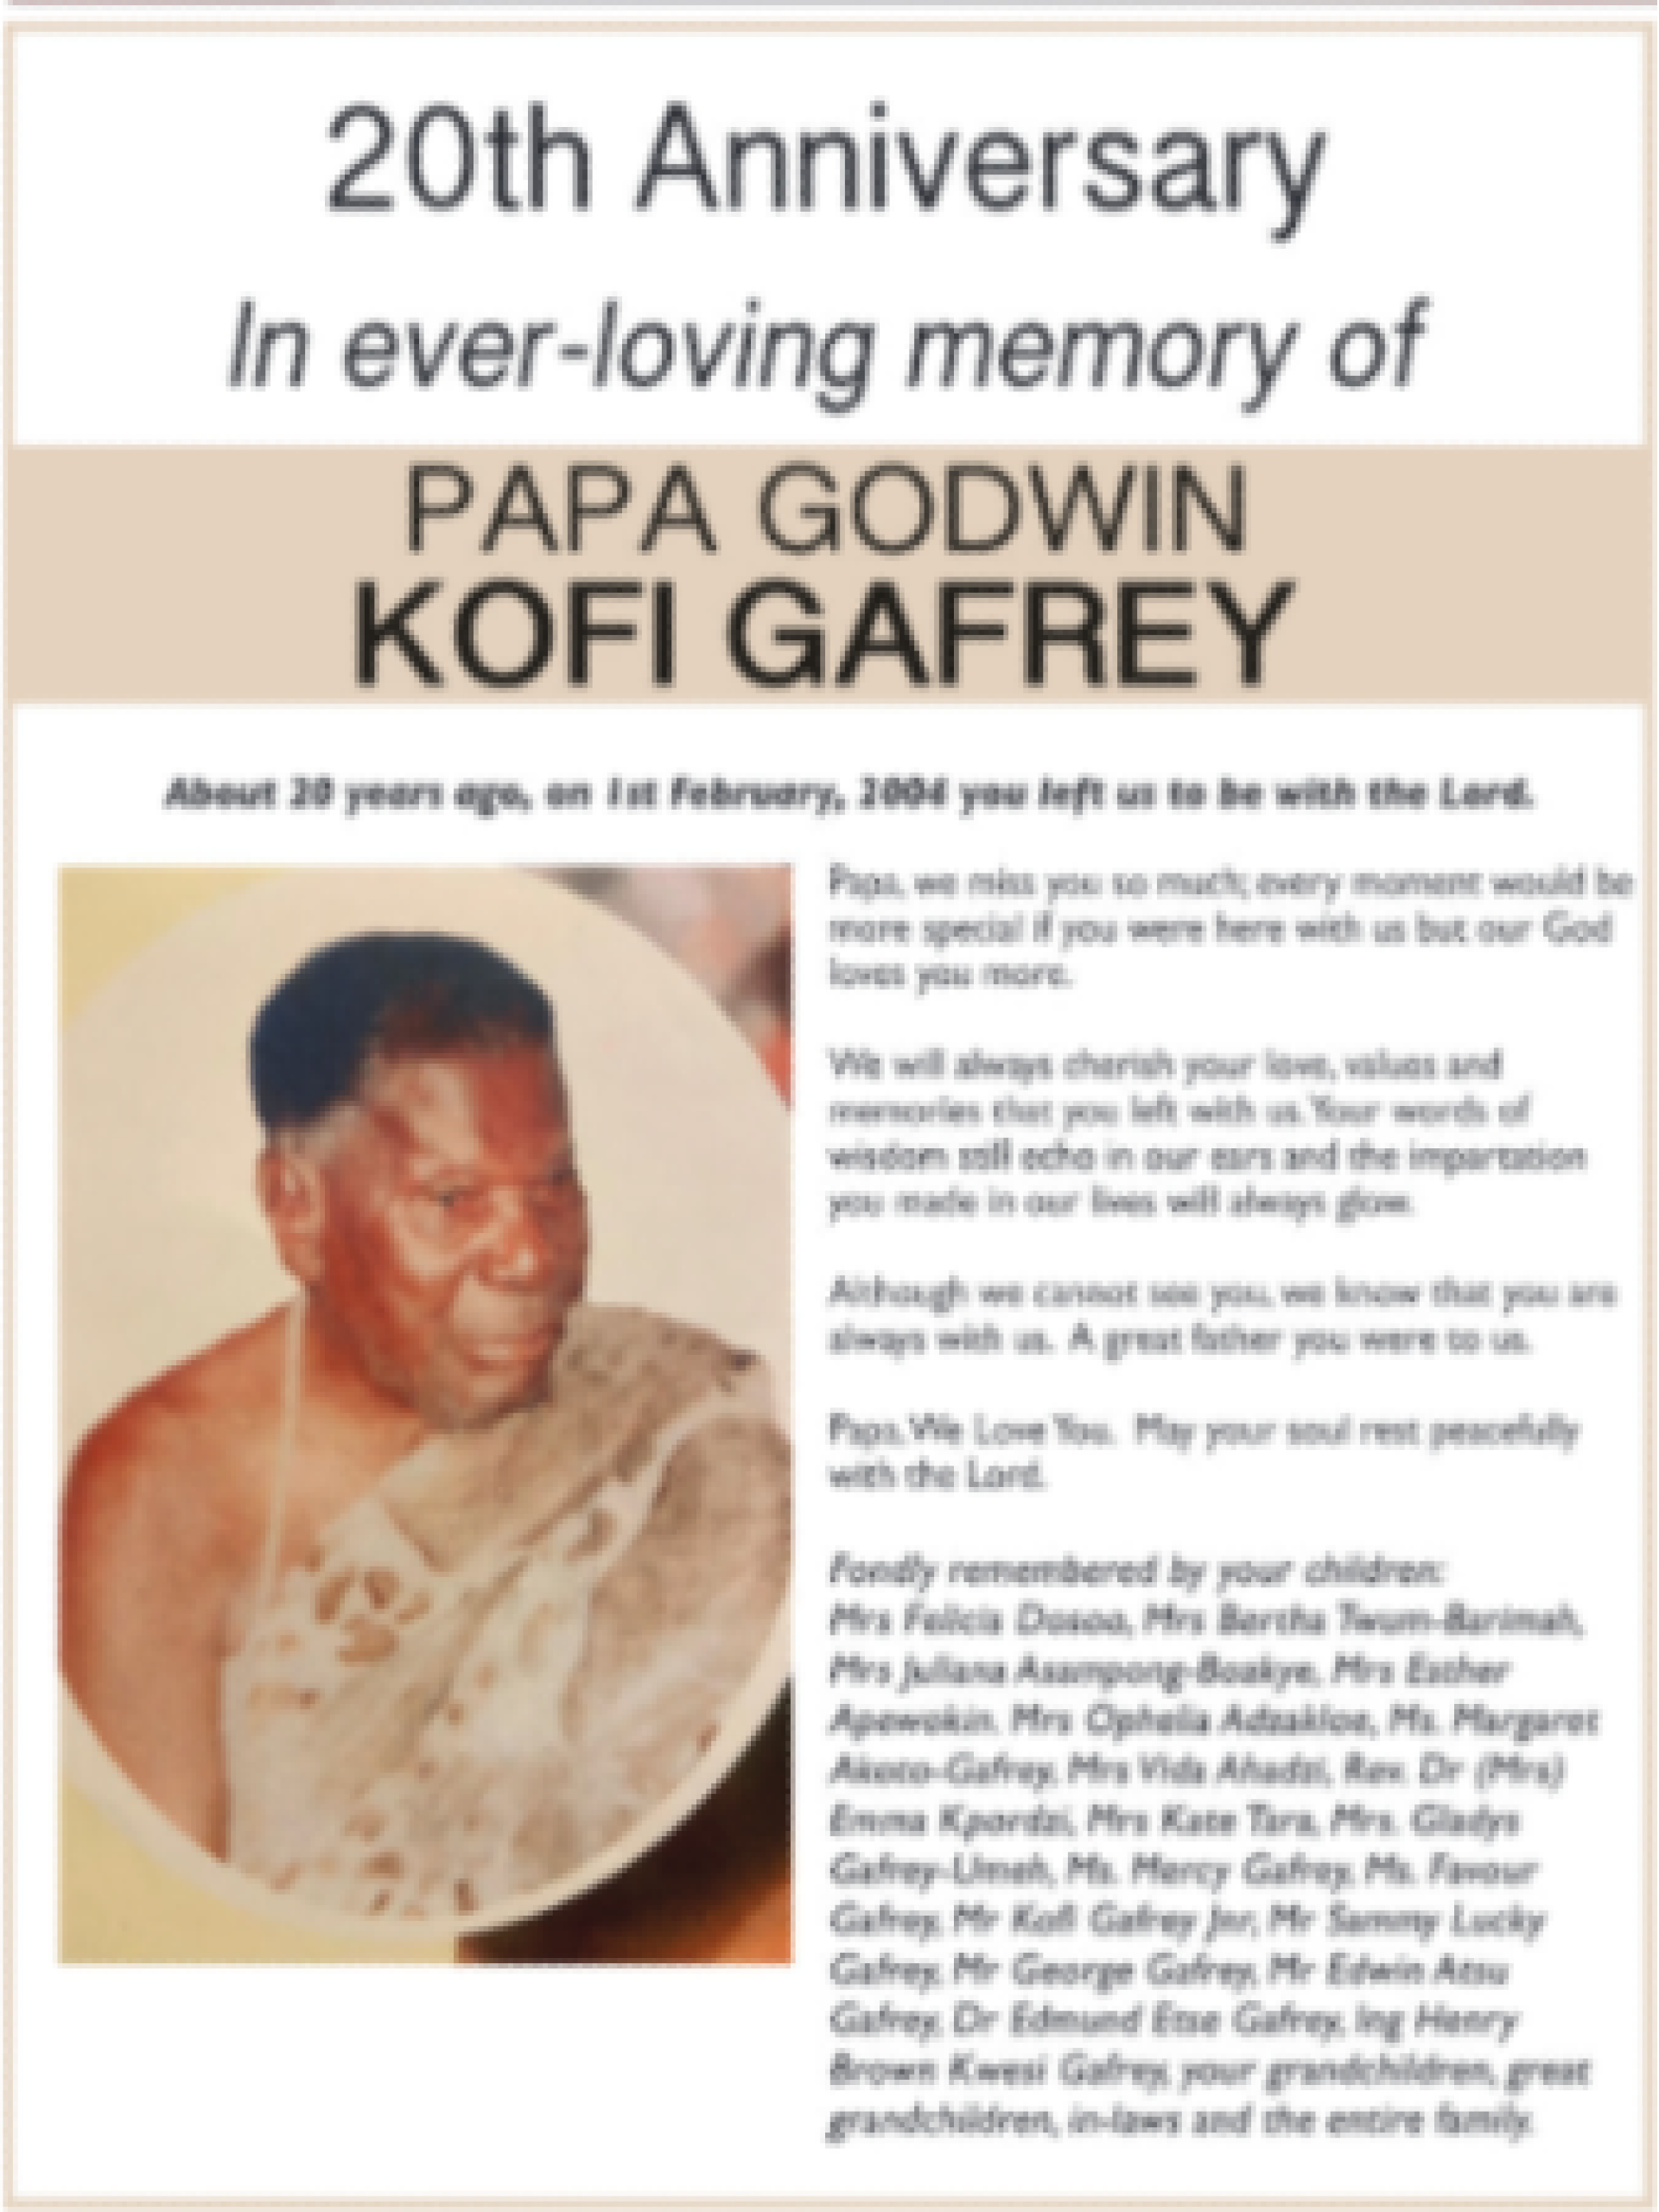 Papa Godwin Kofi Gafrey